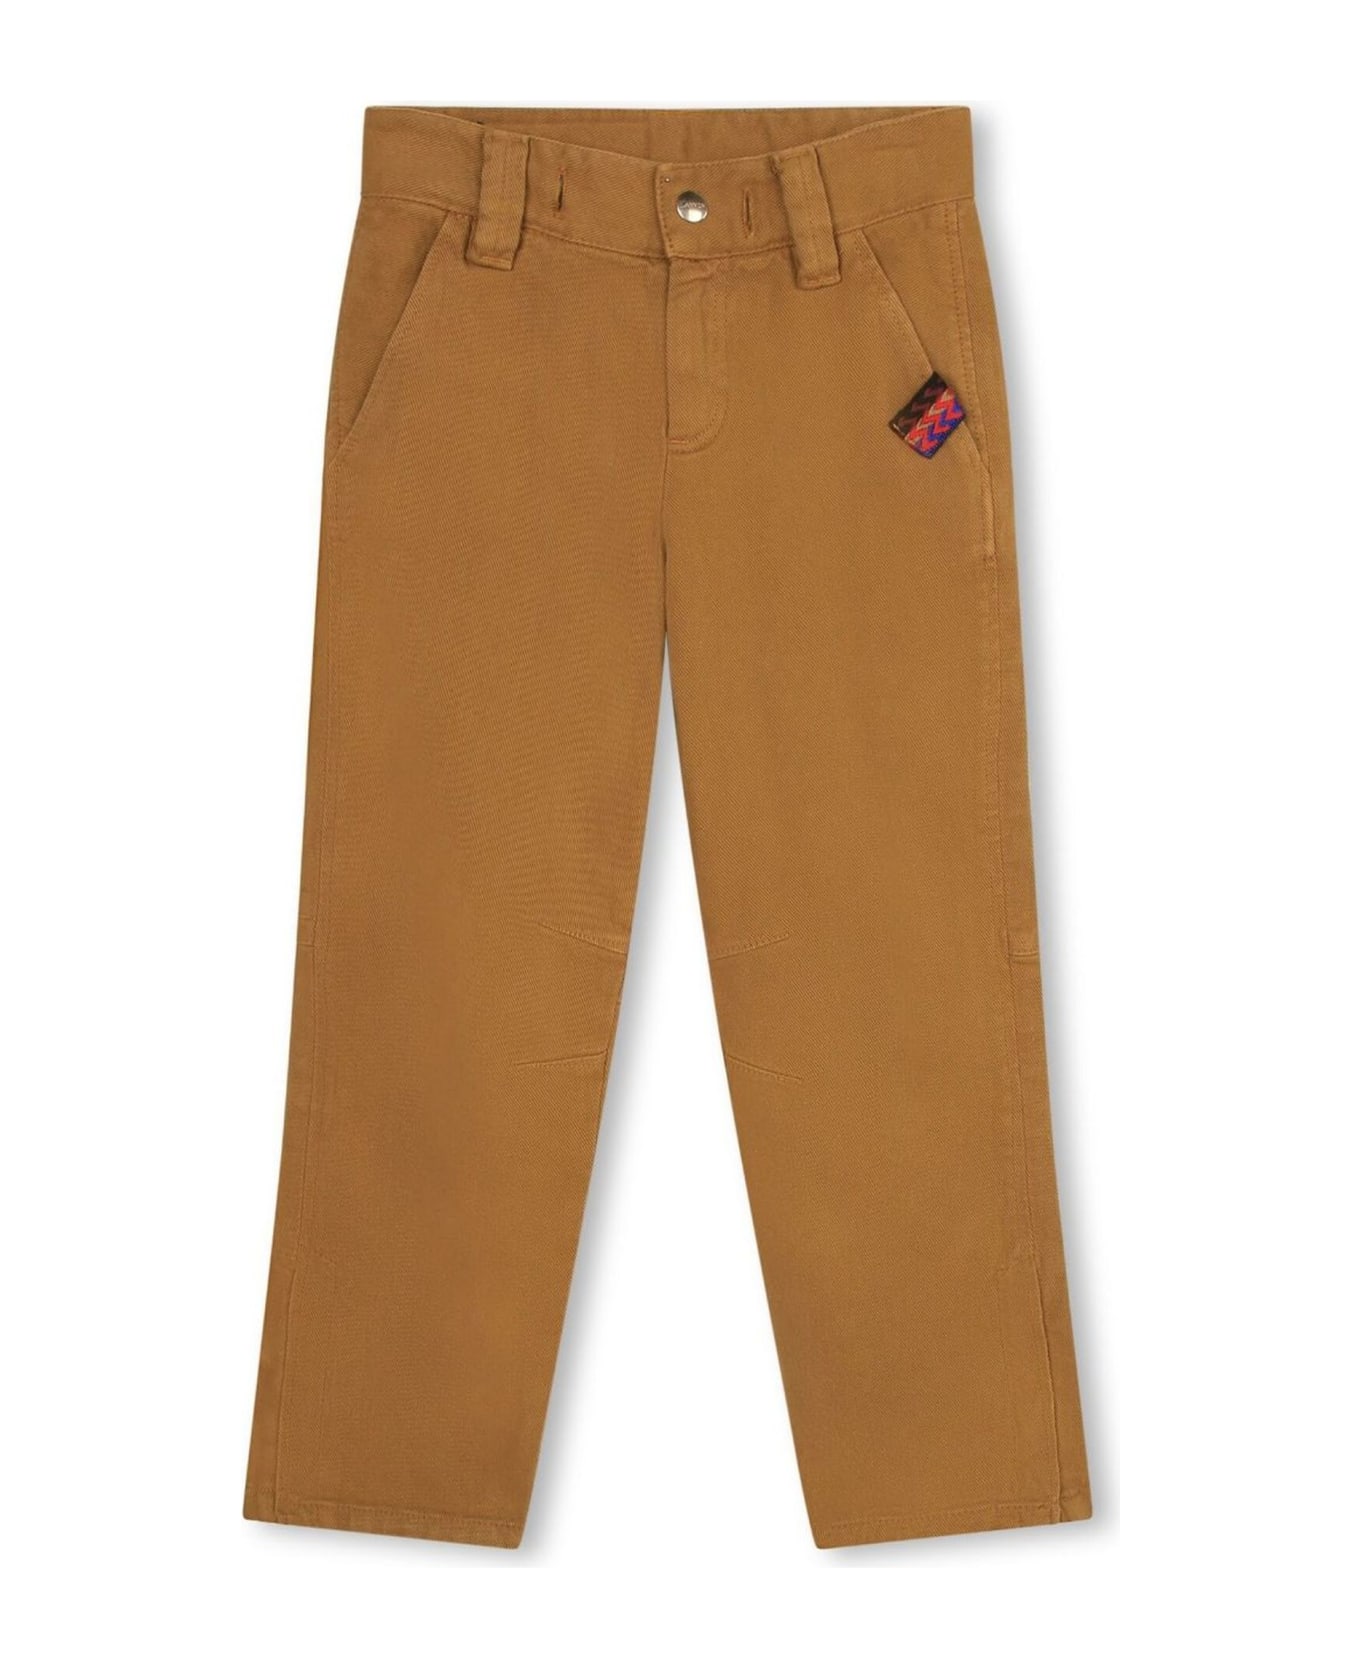 Lanvin Butterscotch Brown Cotton Trousers - Beige